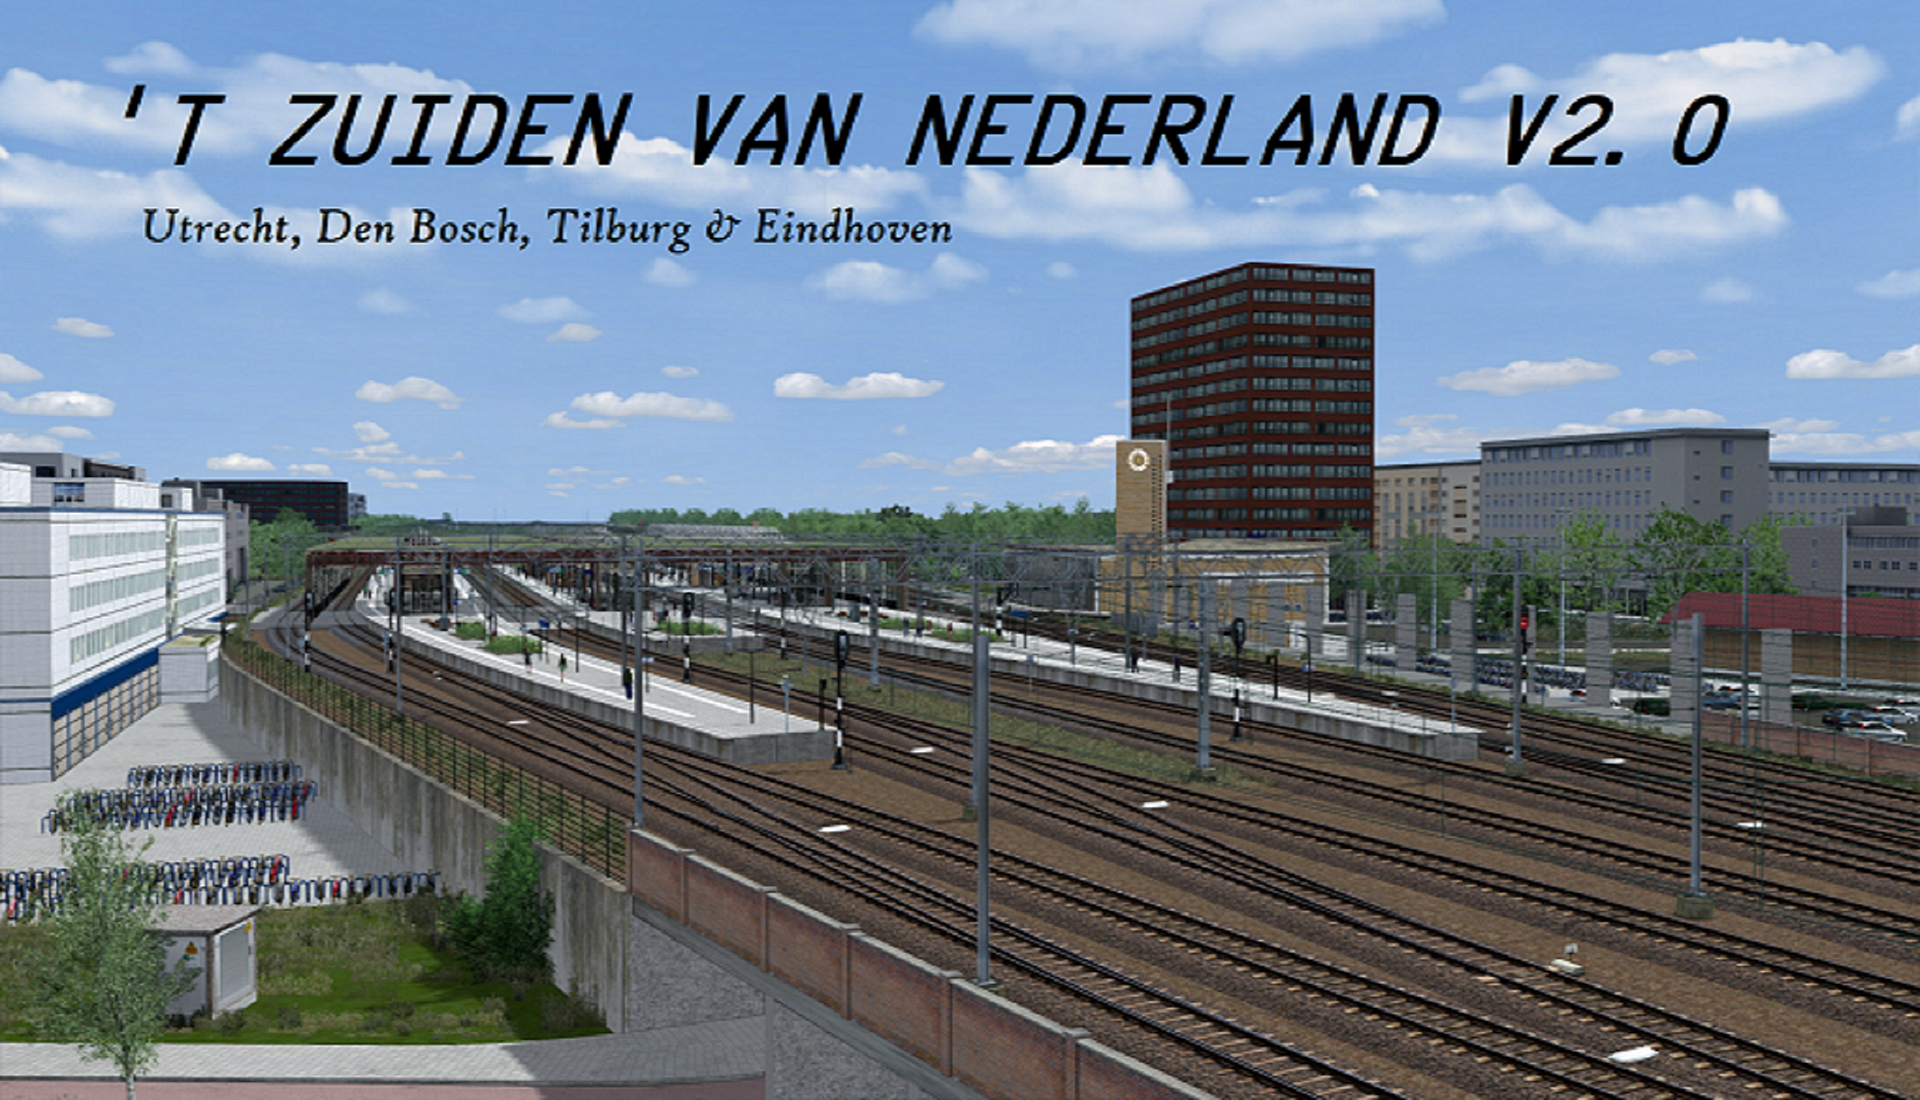 More information about "'t Zuiden van Nederland v2.0"